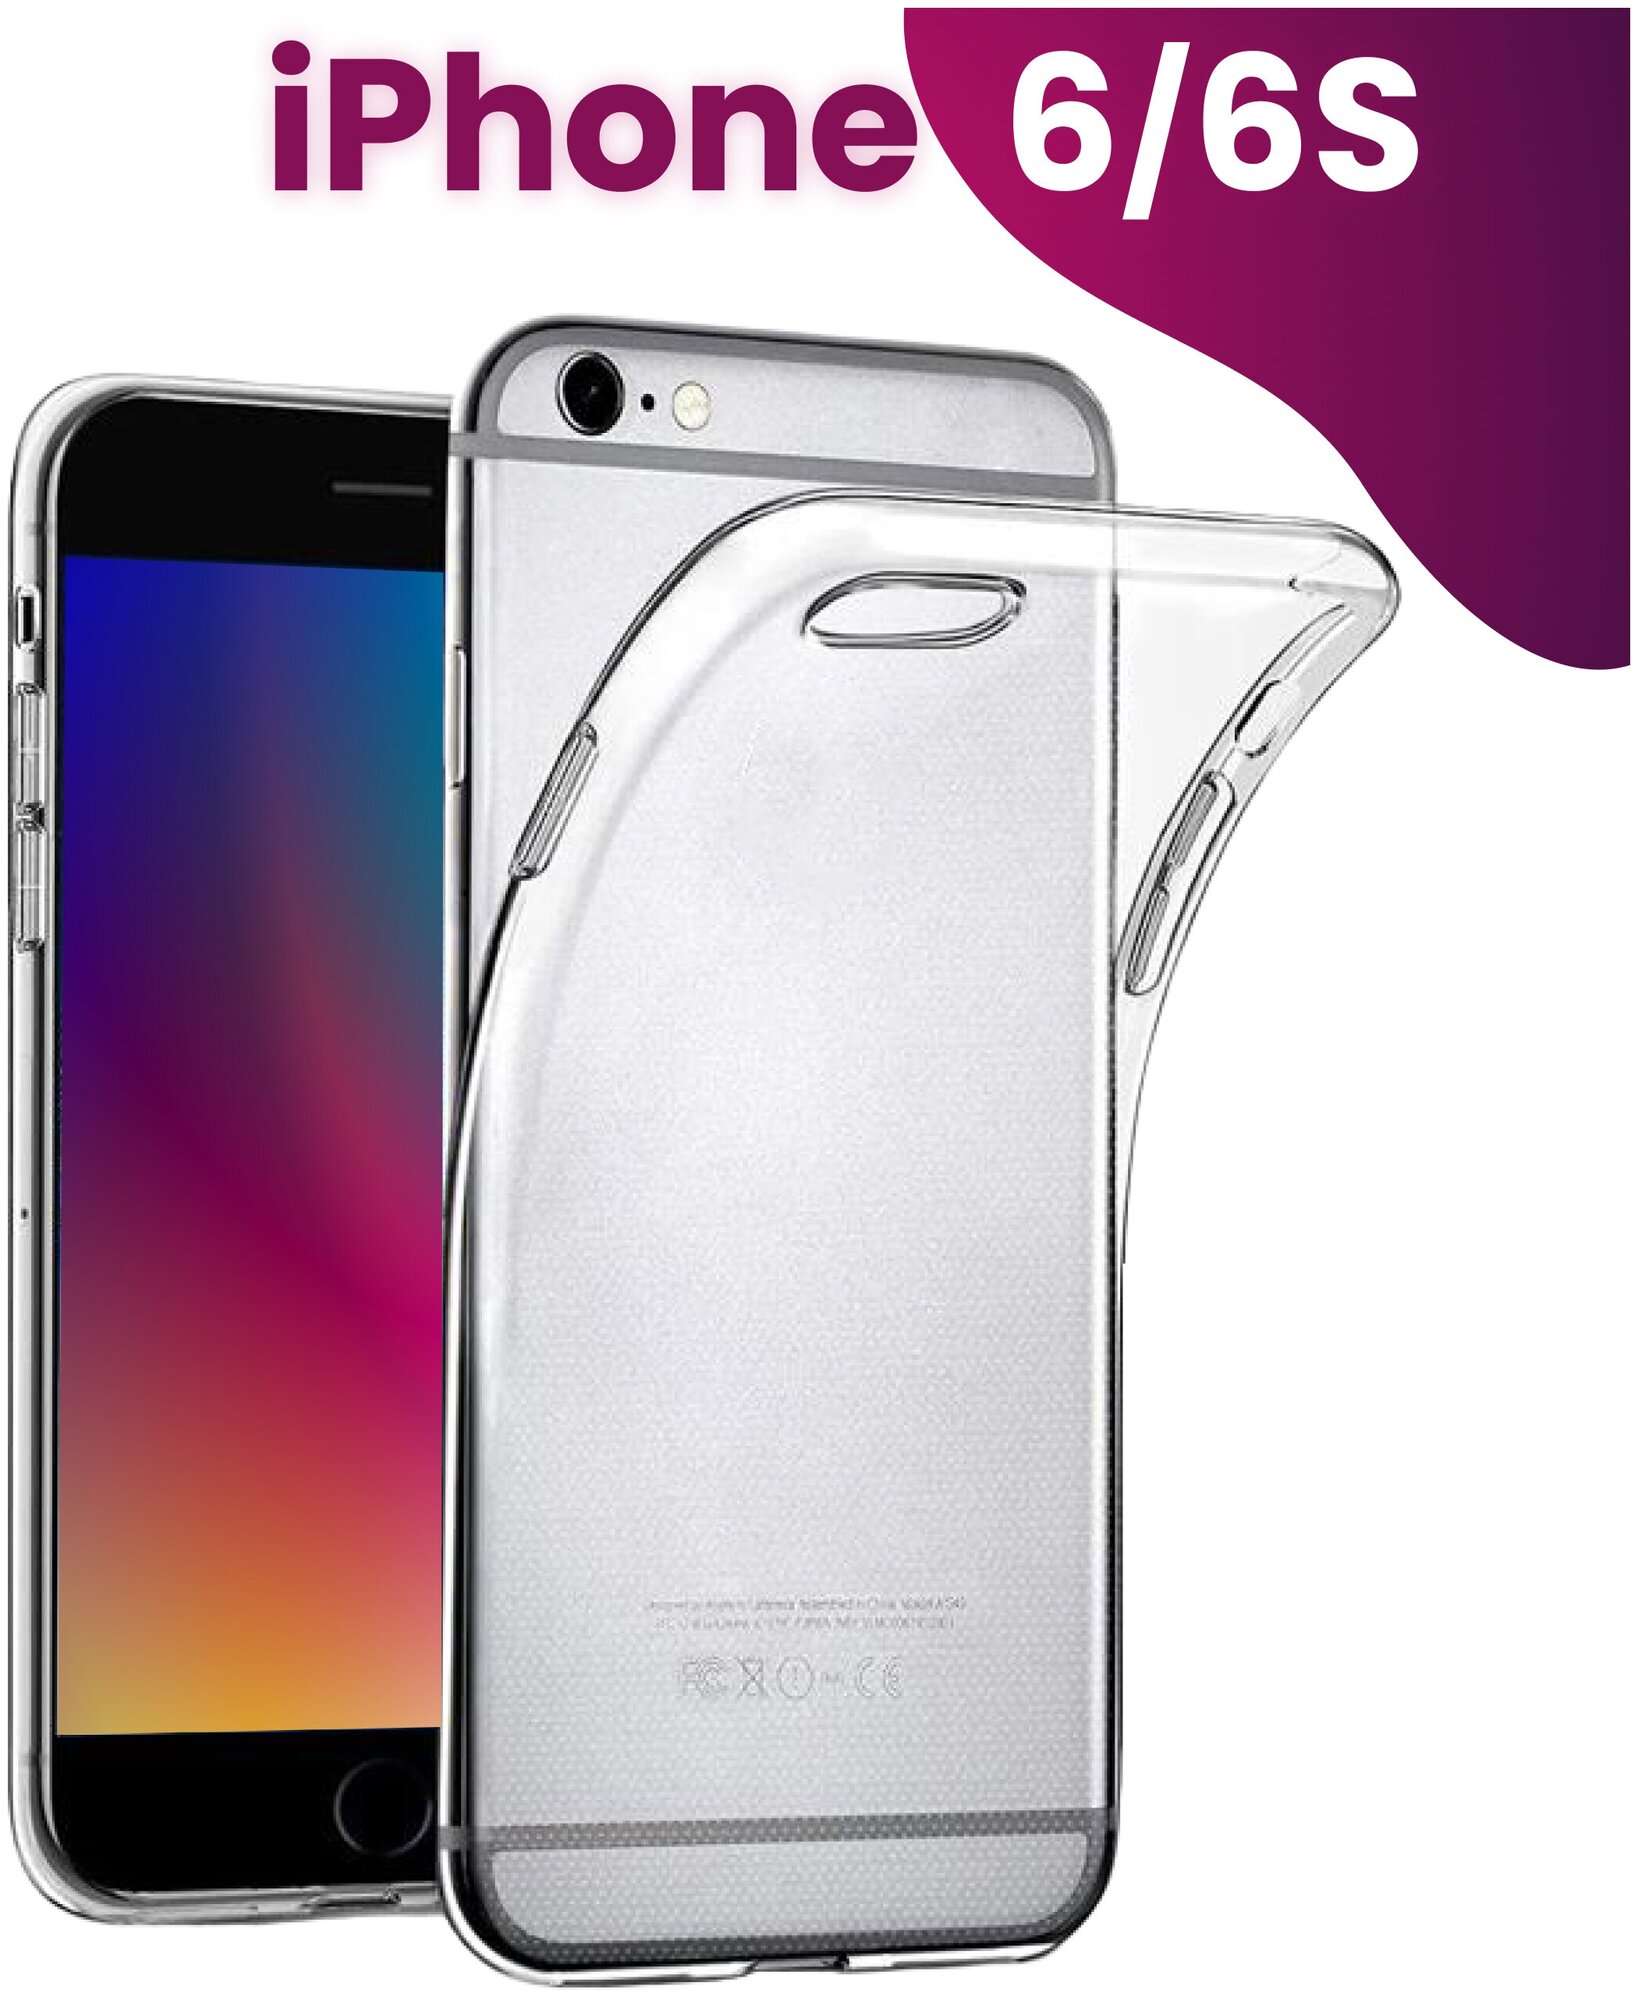 Ультратонкий силиконовый чехол для телефона Apple iPhone 6 и iPhone 6S / Прозрачный защитный чехол для Эпл Айфон 6 и Айфон 6 Эс / Premium силикон